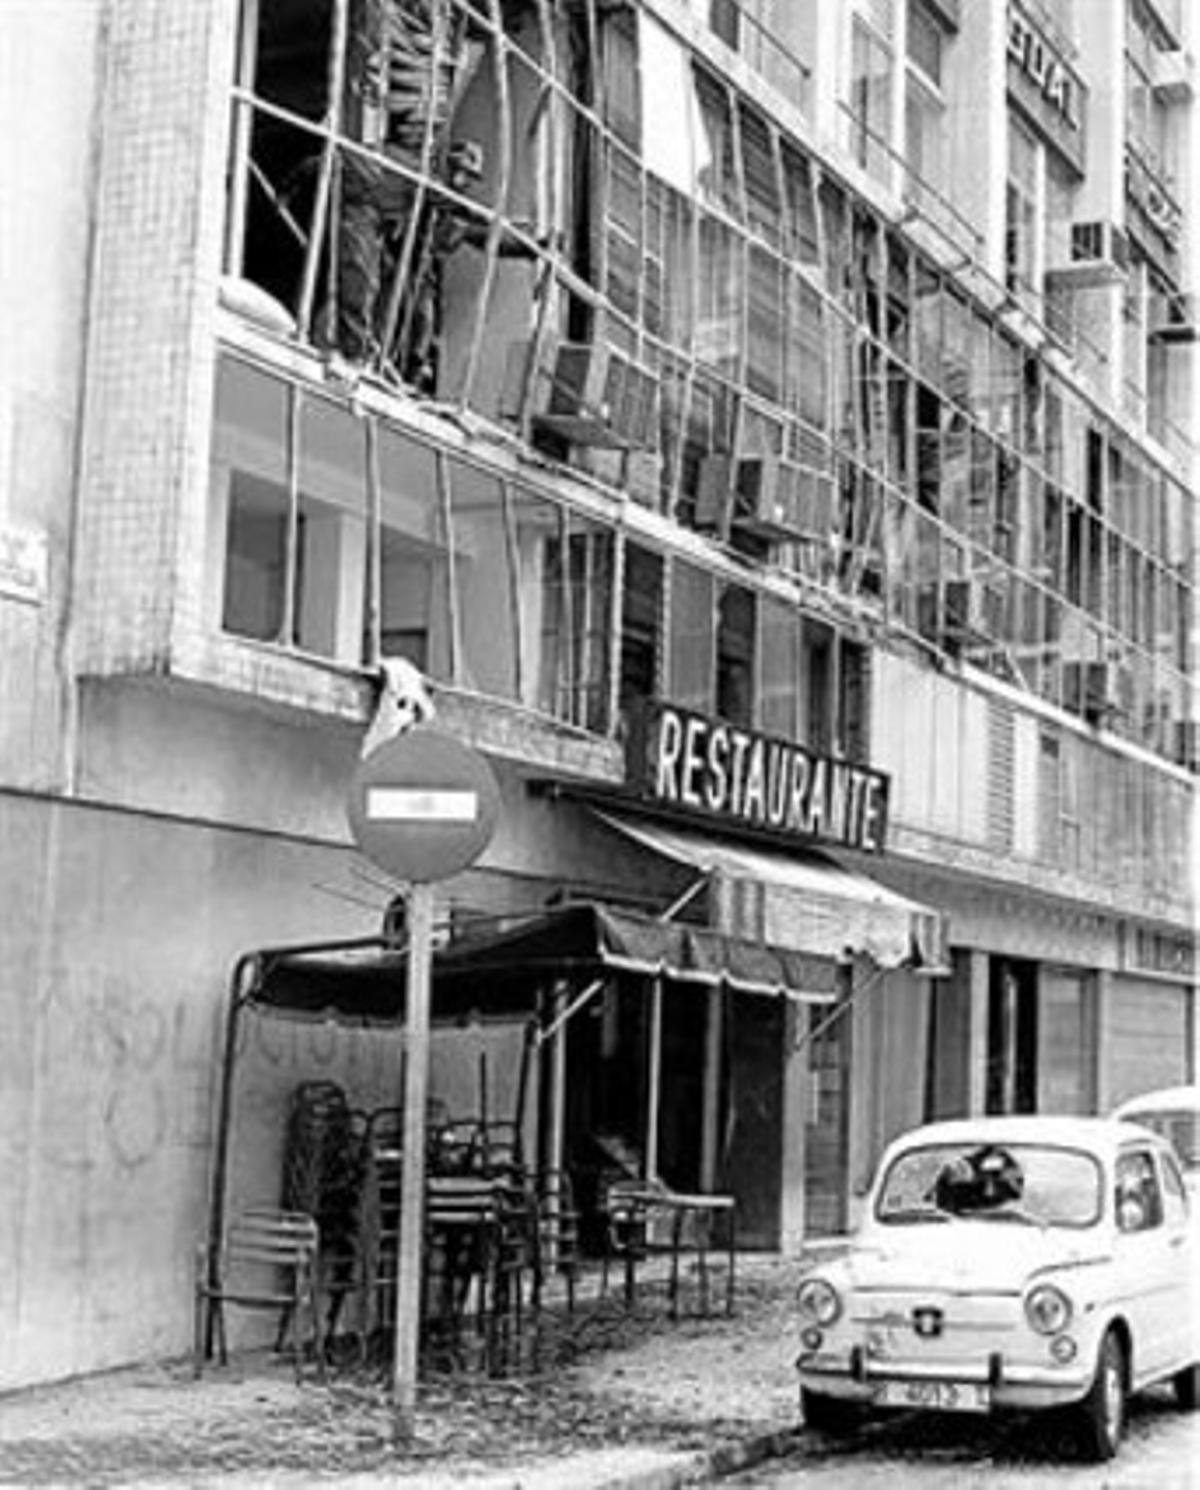 Consecuencias de la bomba, el 20 de septiembre de 1977, en la calle de Tallers.